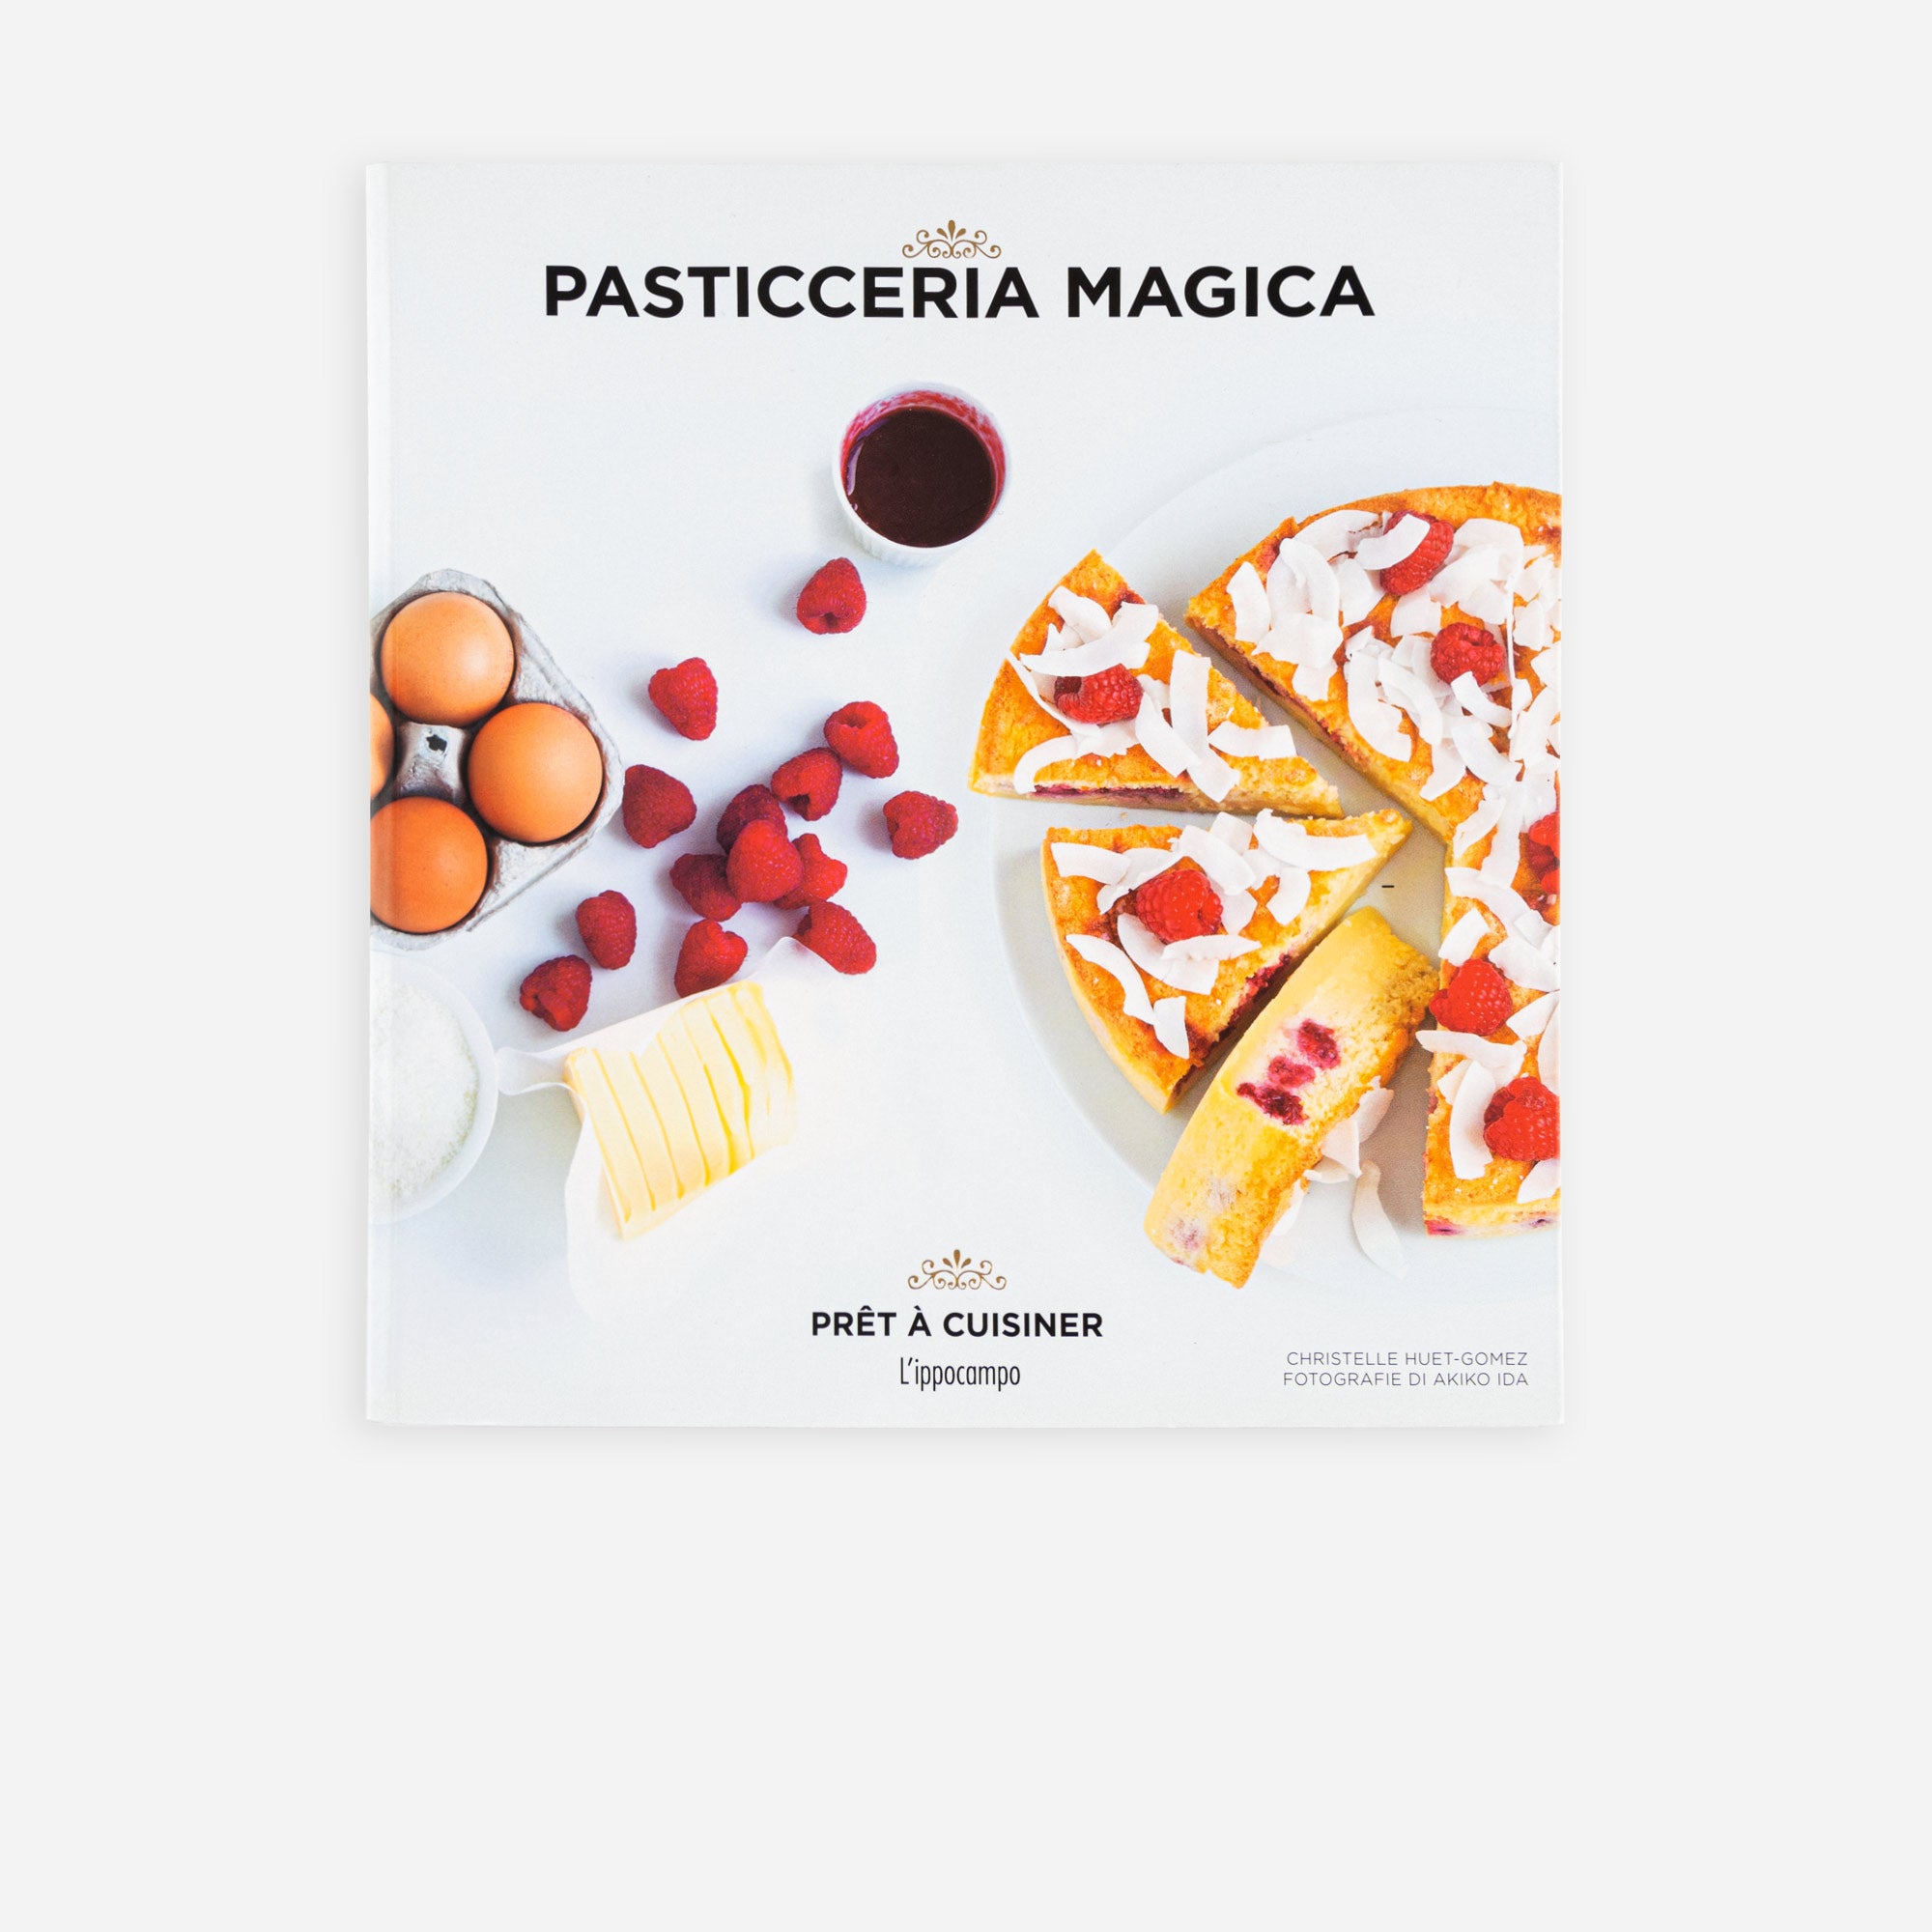 Pasticceria Magica